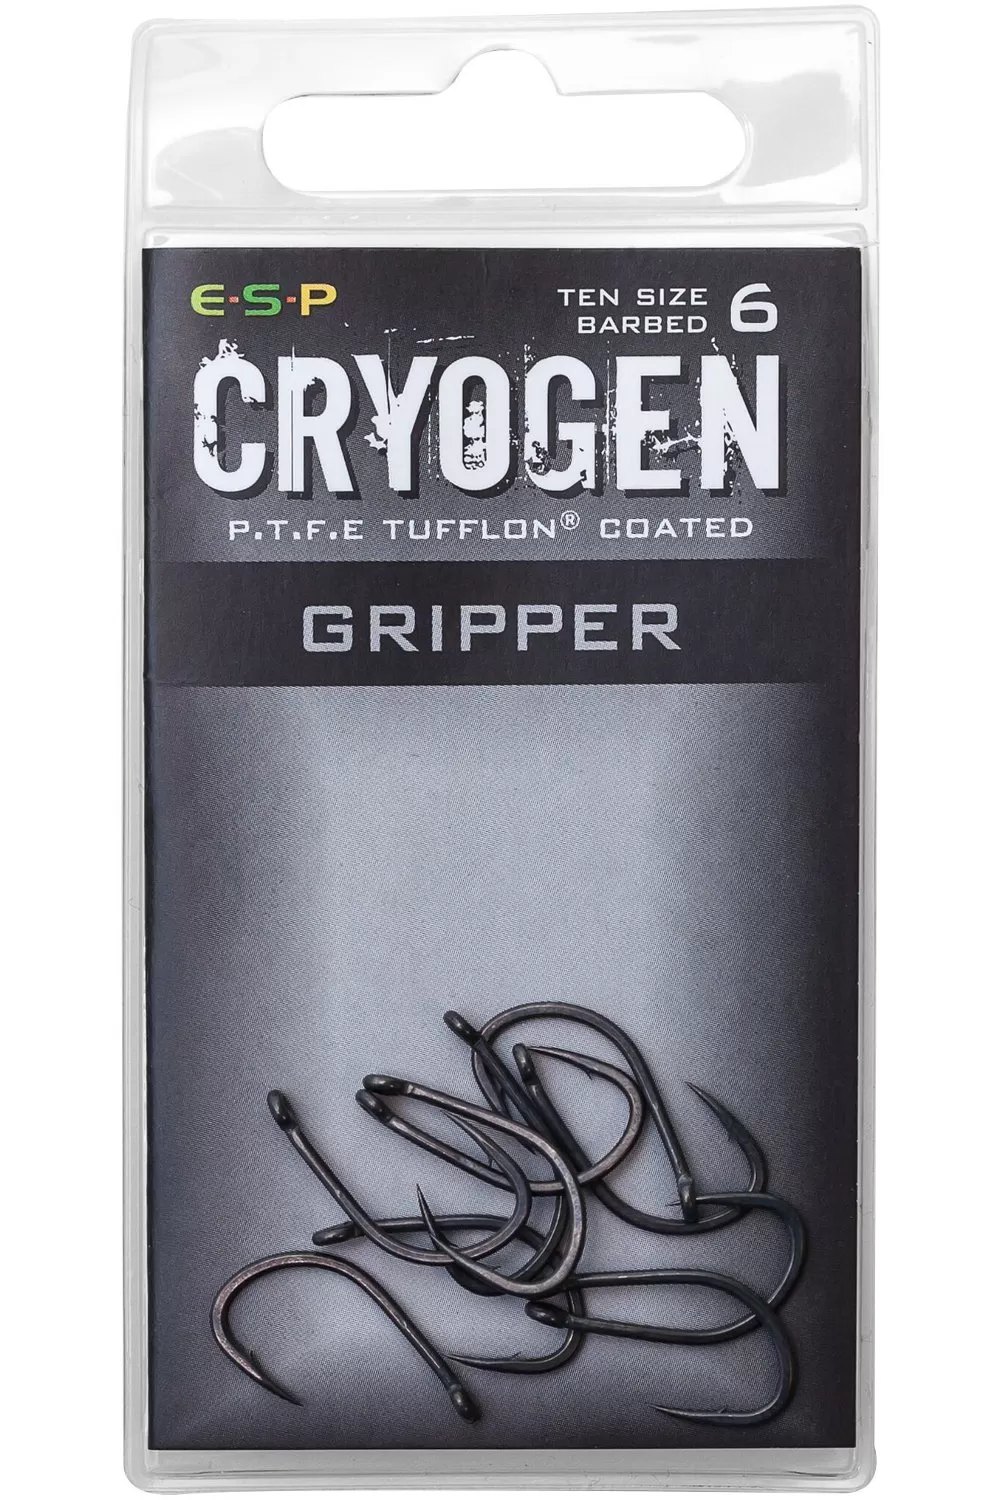 Крючки карповые E-S-P CRYOGEN GRIPPER - 10шт.